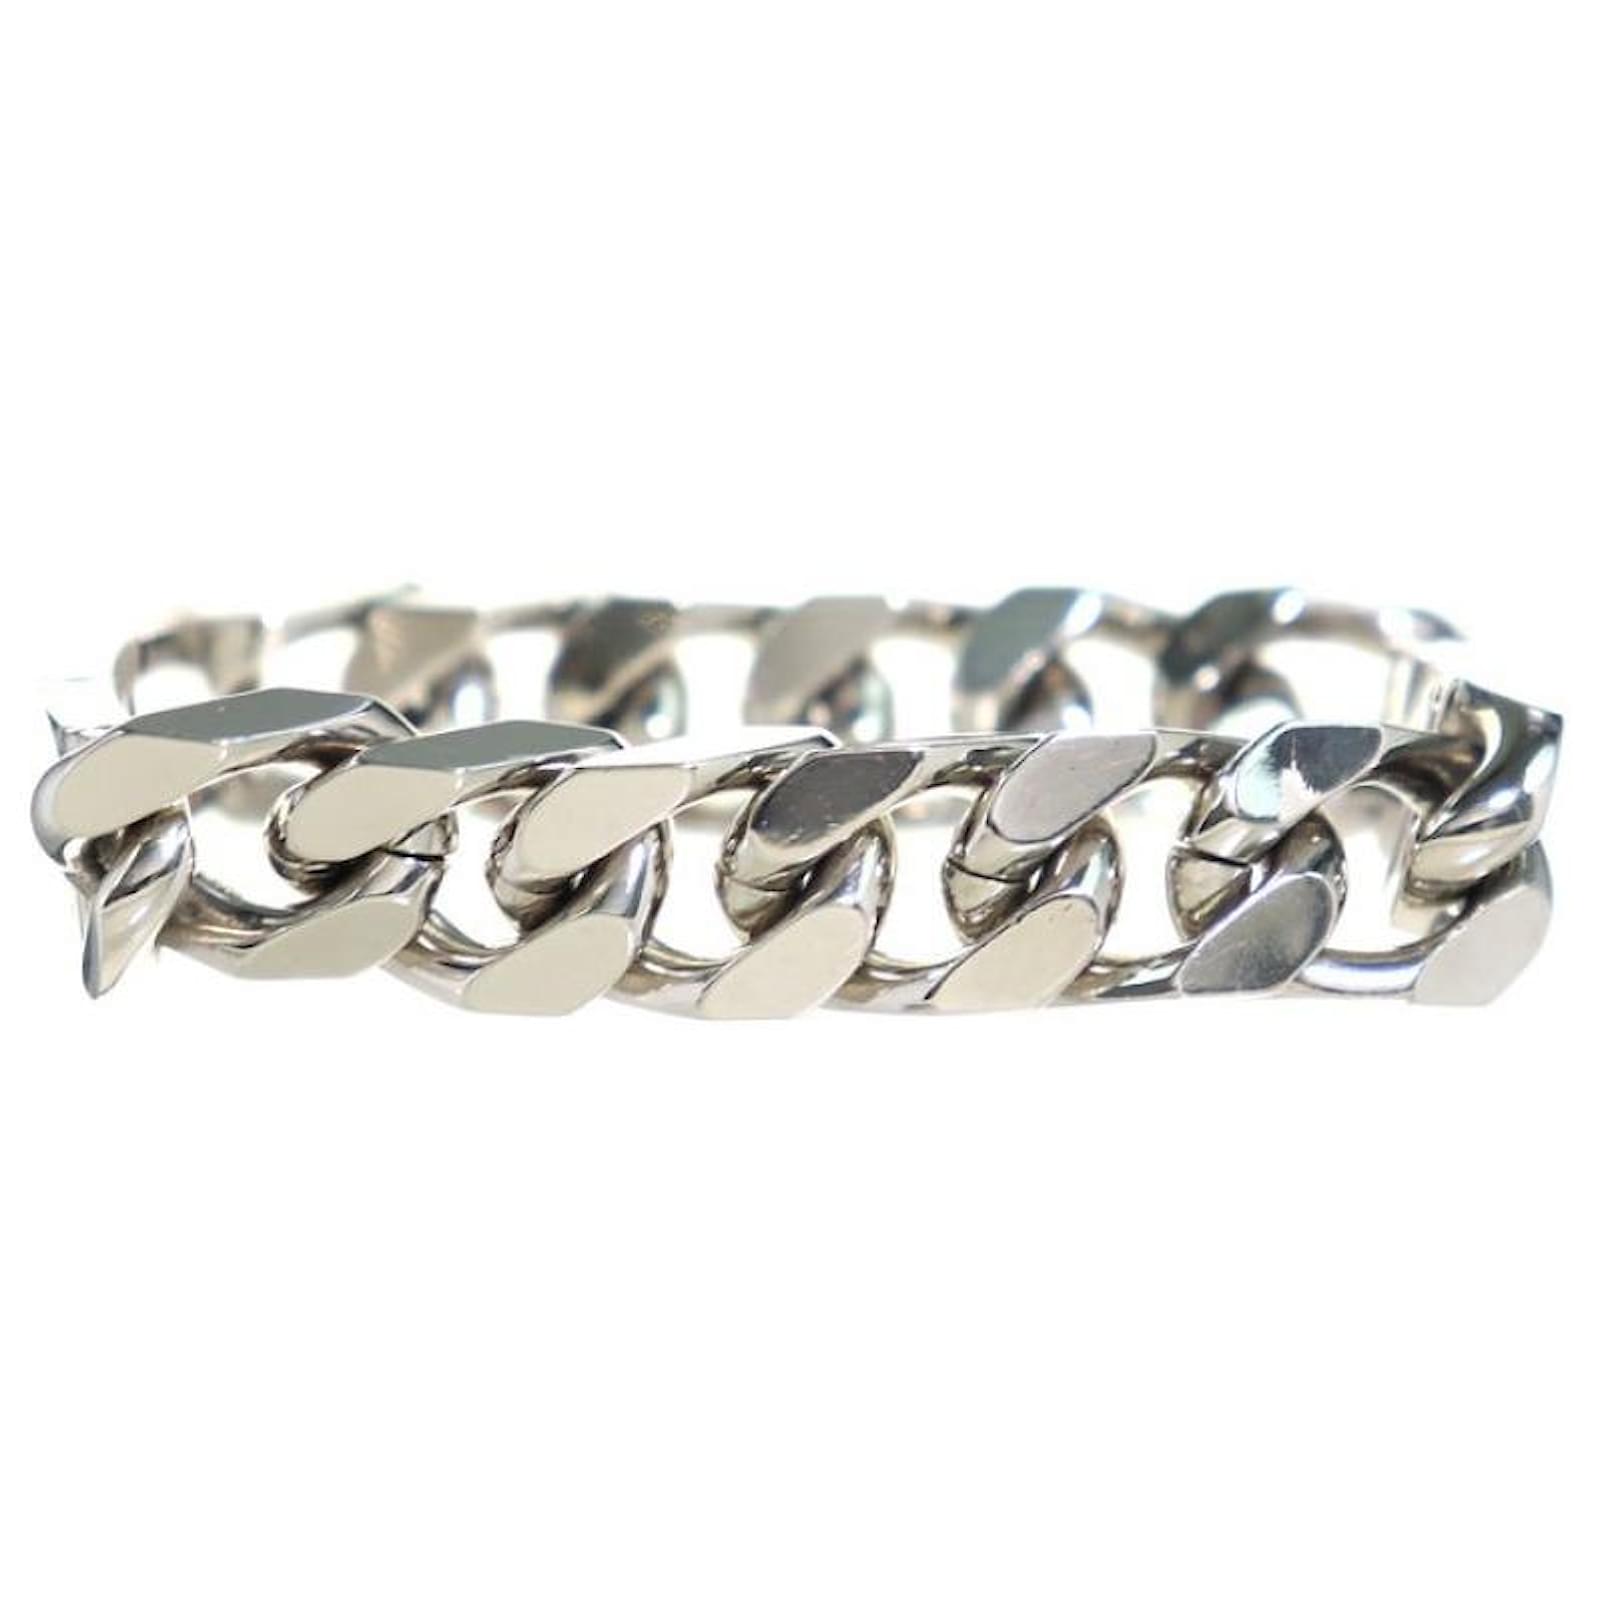 LOUIS VUITTON Monogram chain bracelet M62486